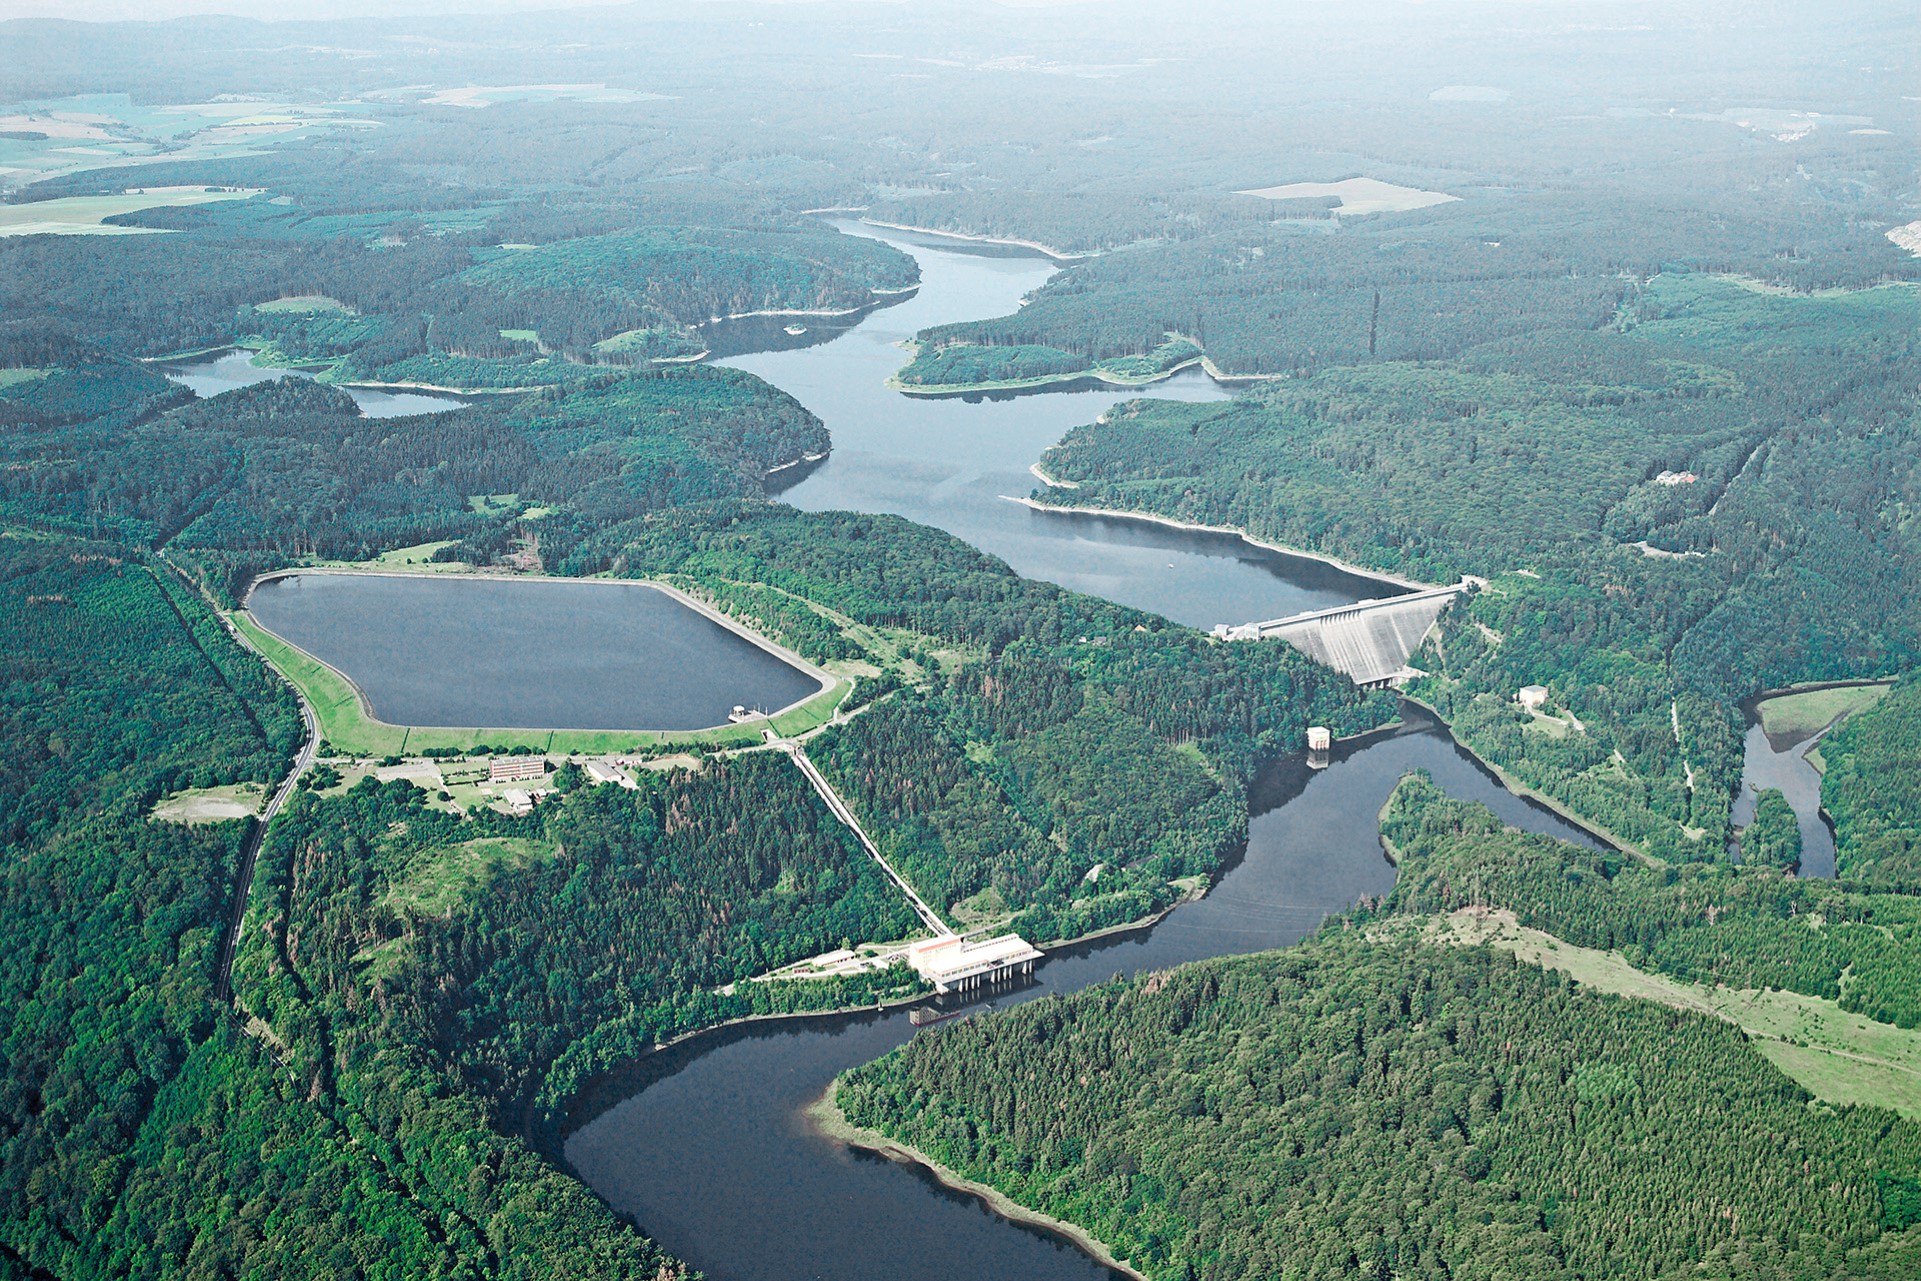 Hydropower plant Wendefurth, Germany